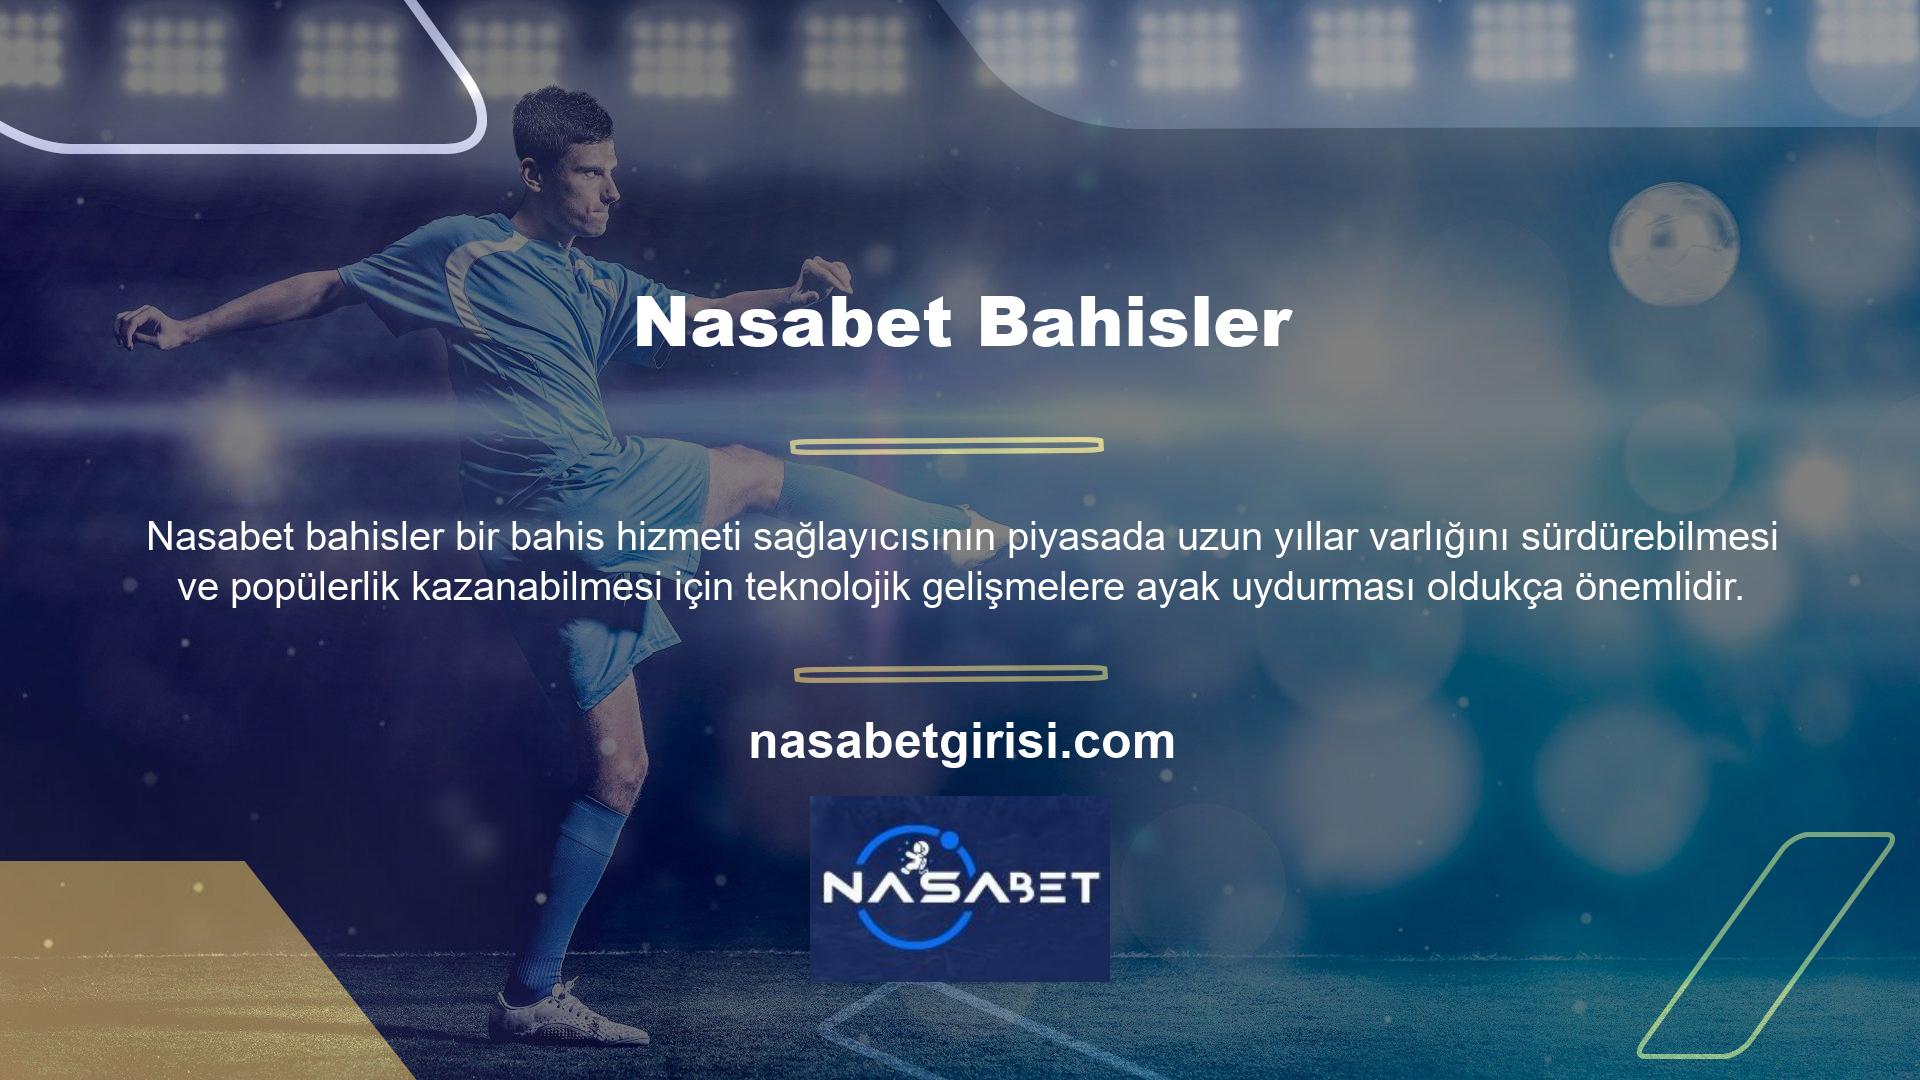 Bu amaçla Nasabet mobil uygulaması, istediğiniz zaman ve istediğiniz yerde hesabınıza erişmenize ve bahis oynamanıza olanak tanır